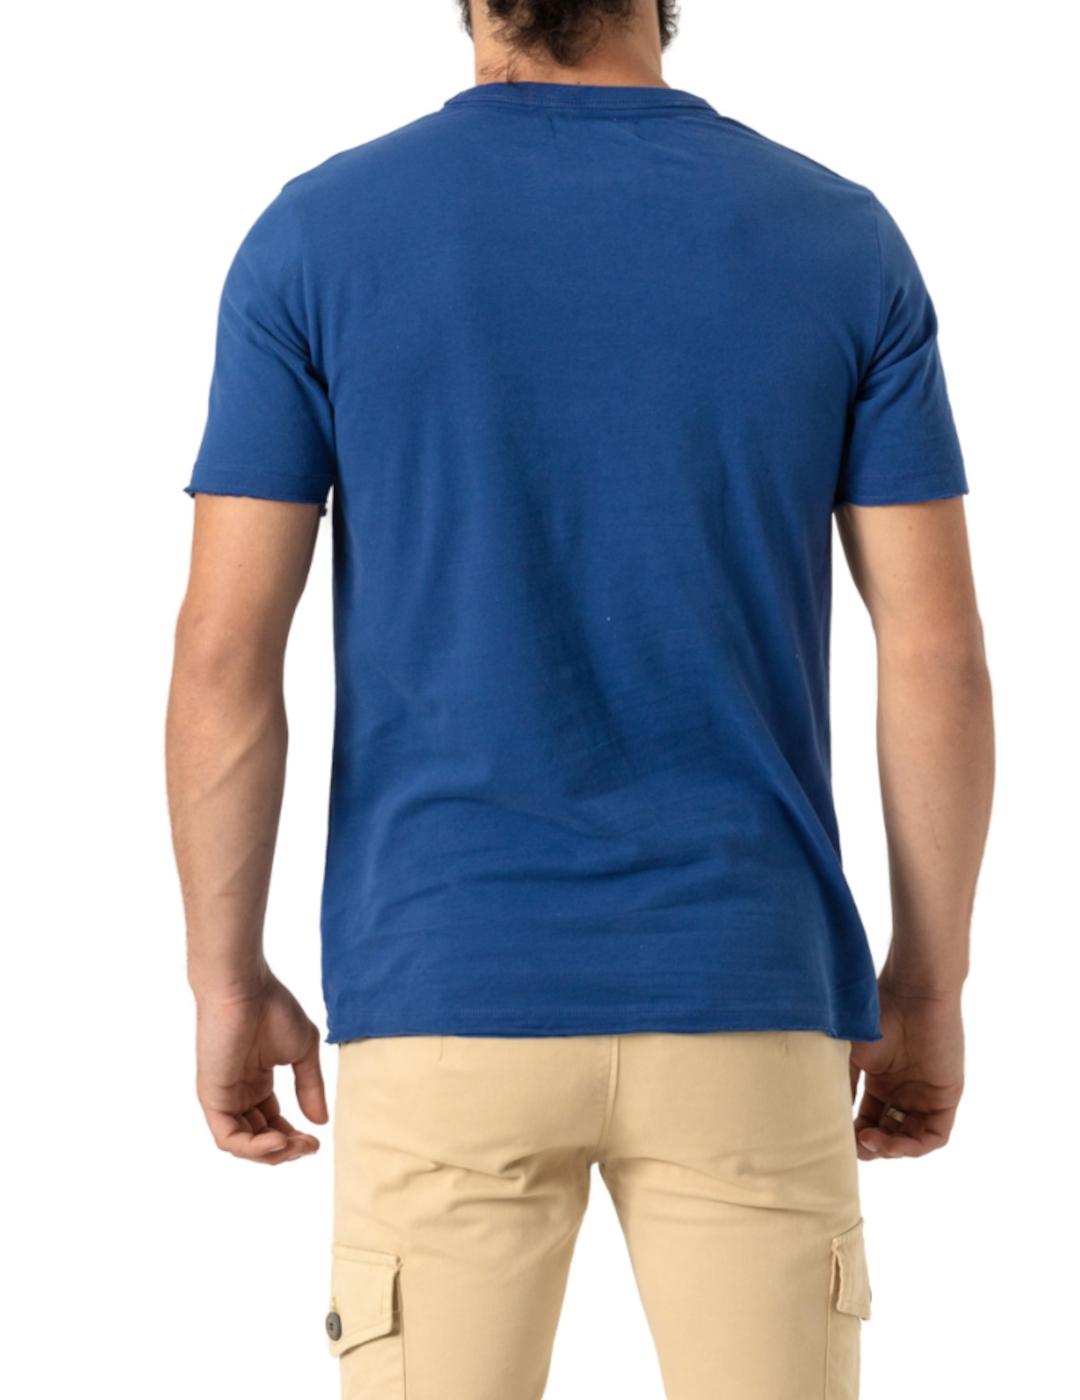 Camiseta Altona marino para hombre-z